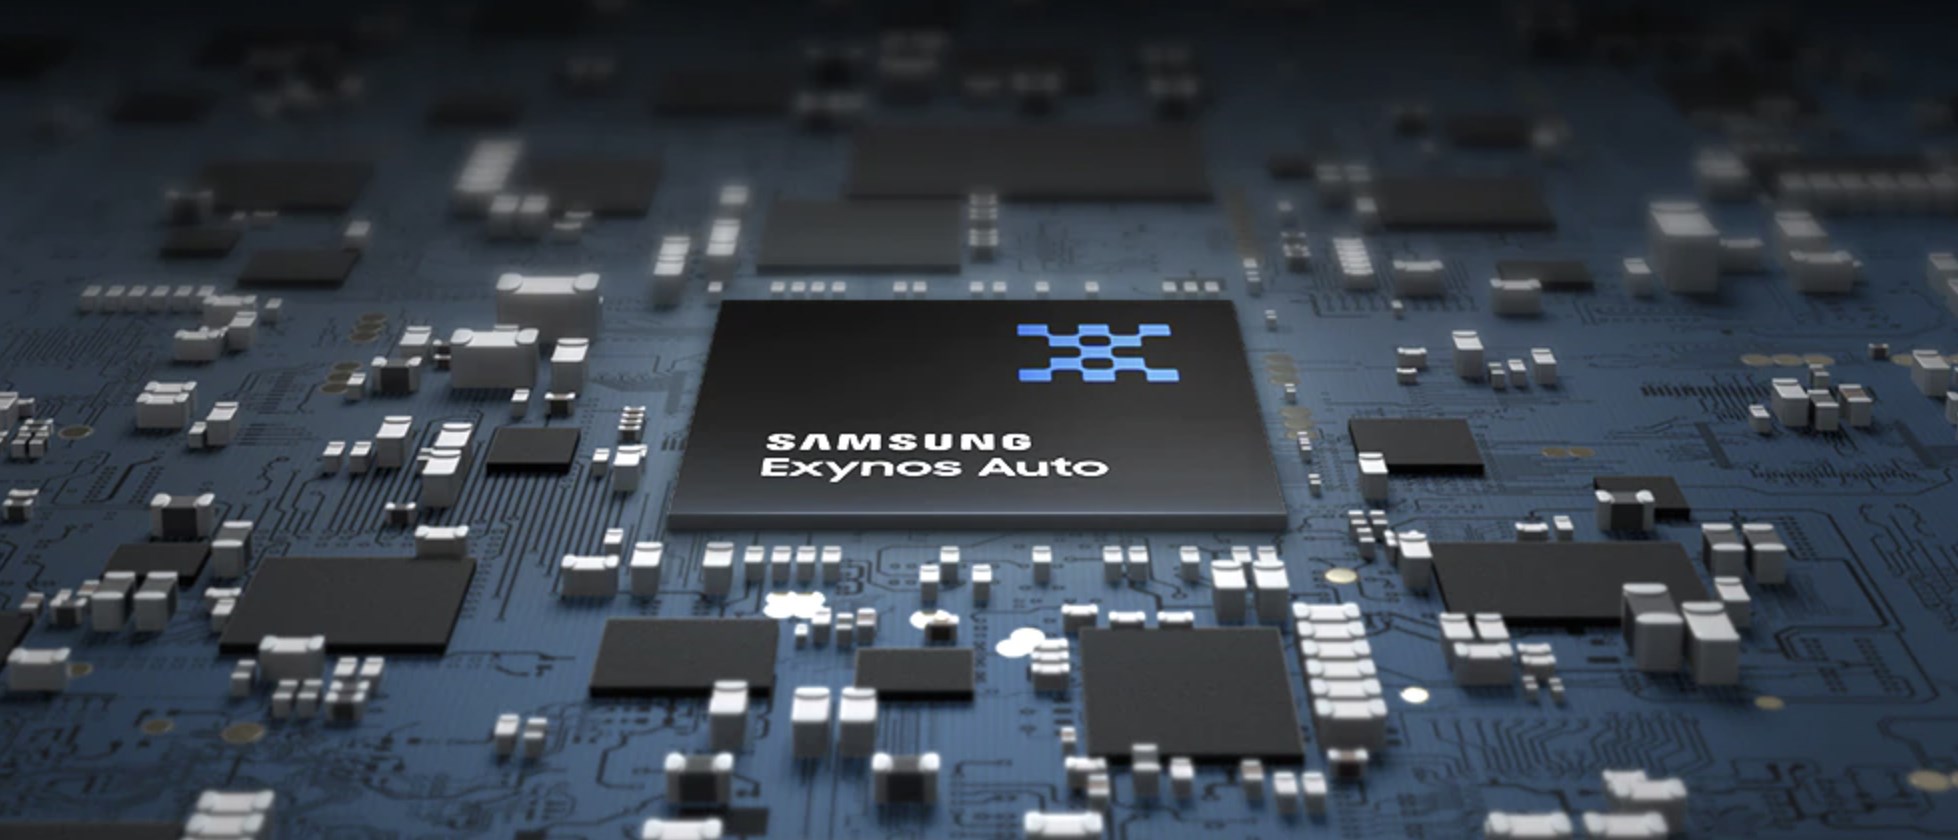 Samsung, otomotiv yongalarına güçlü AMD GPU’sunu ekledi